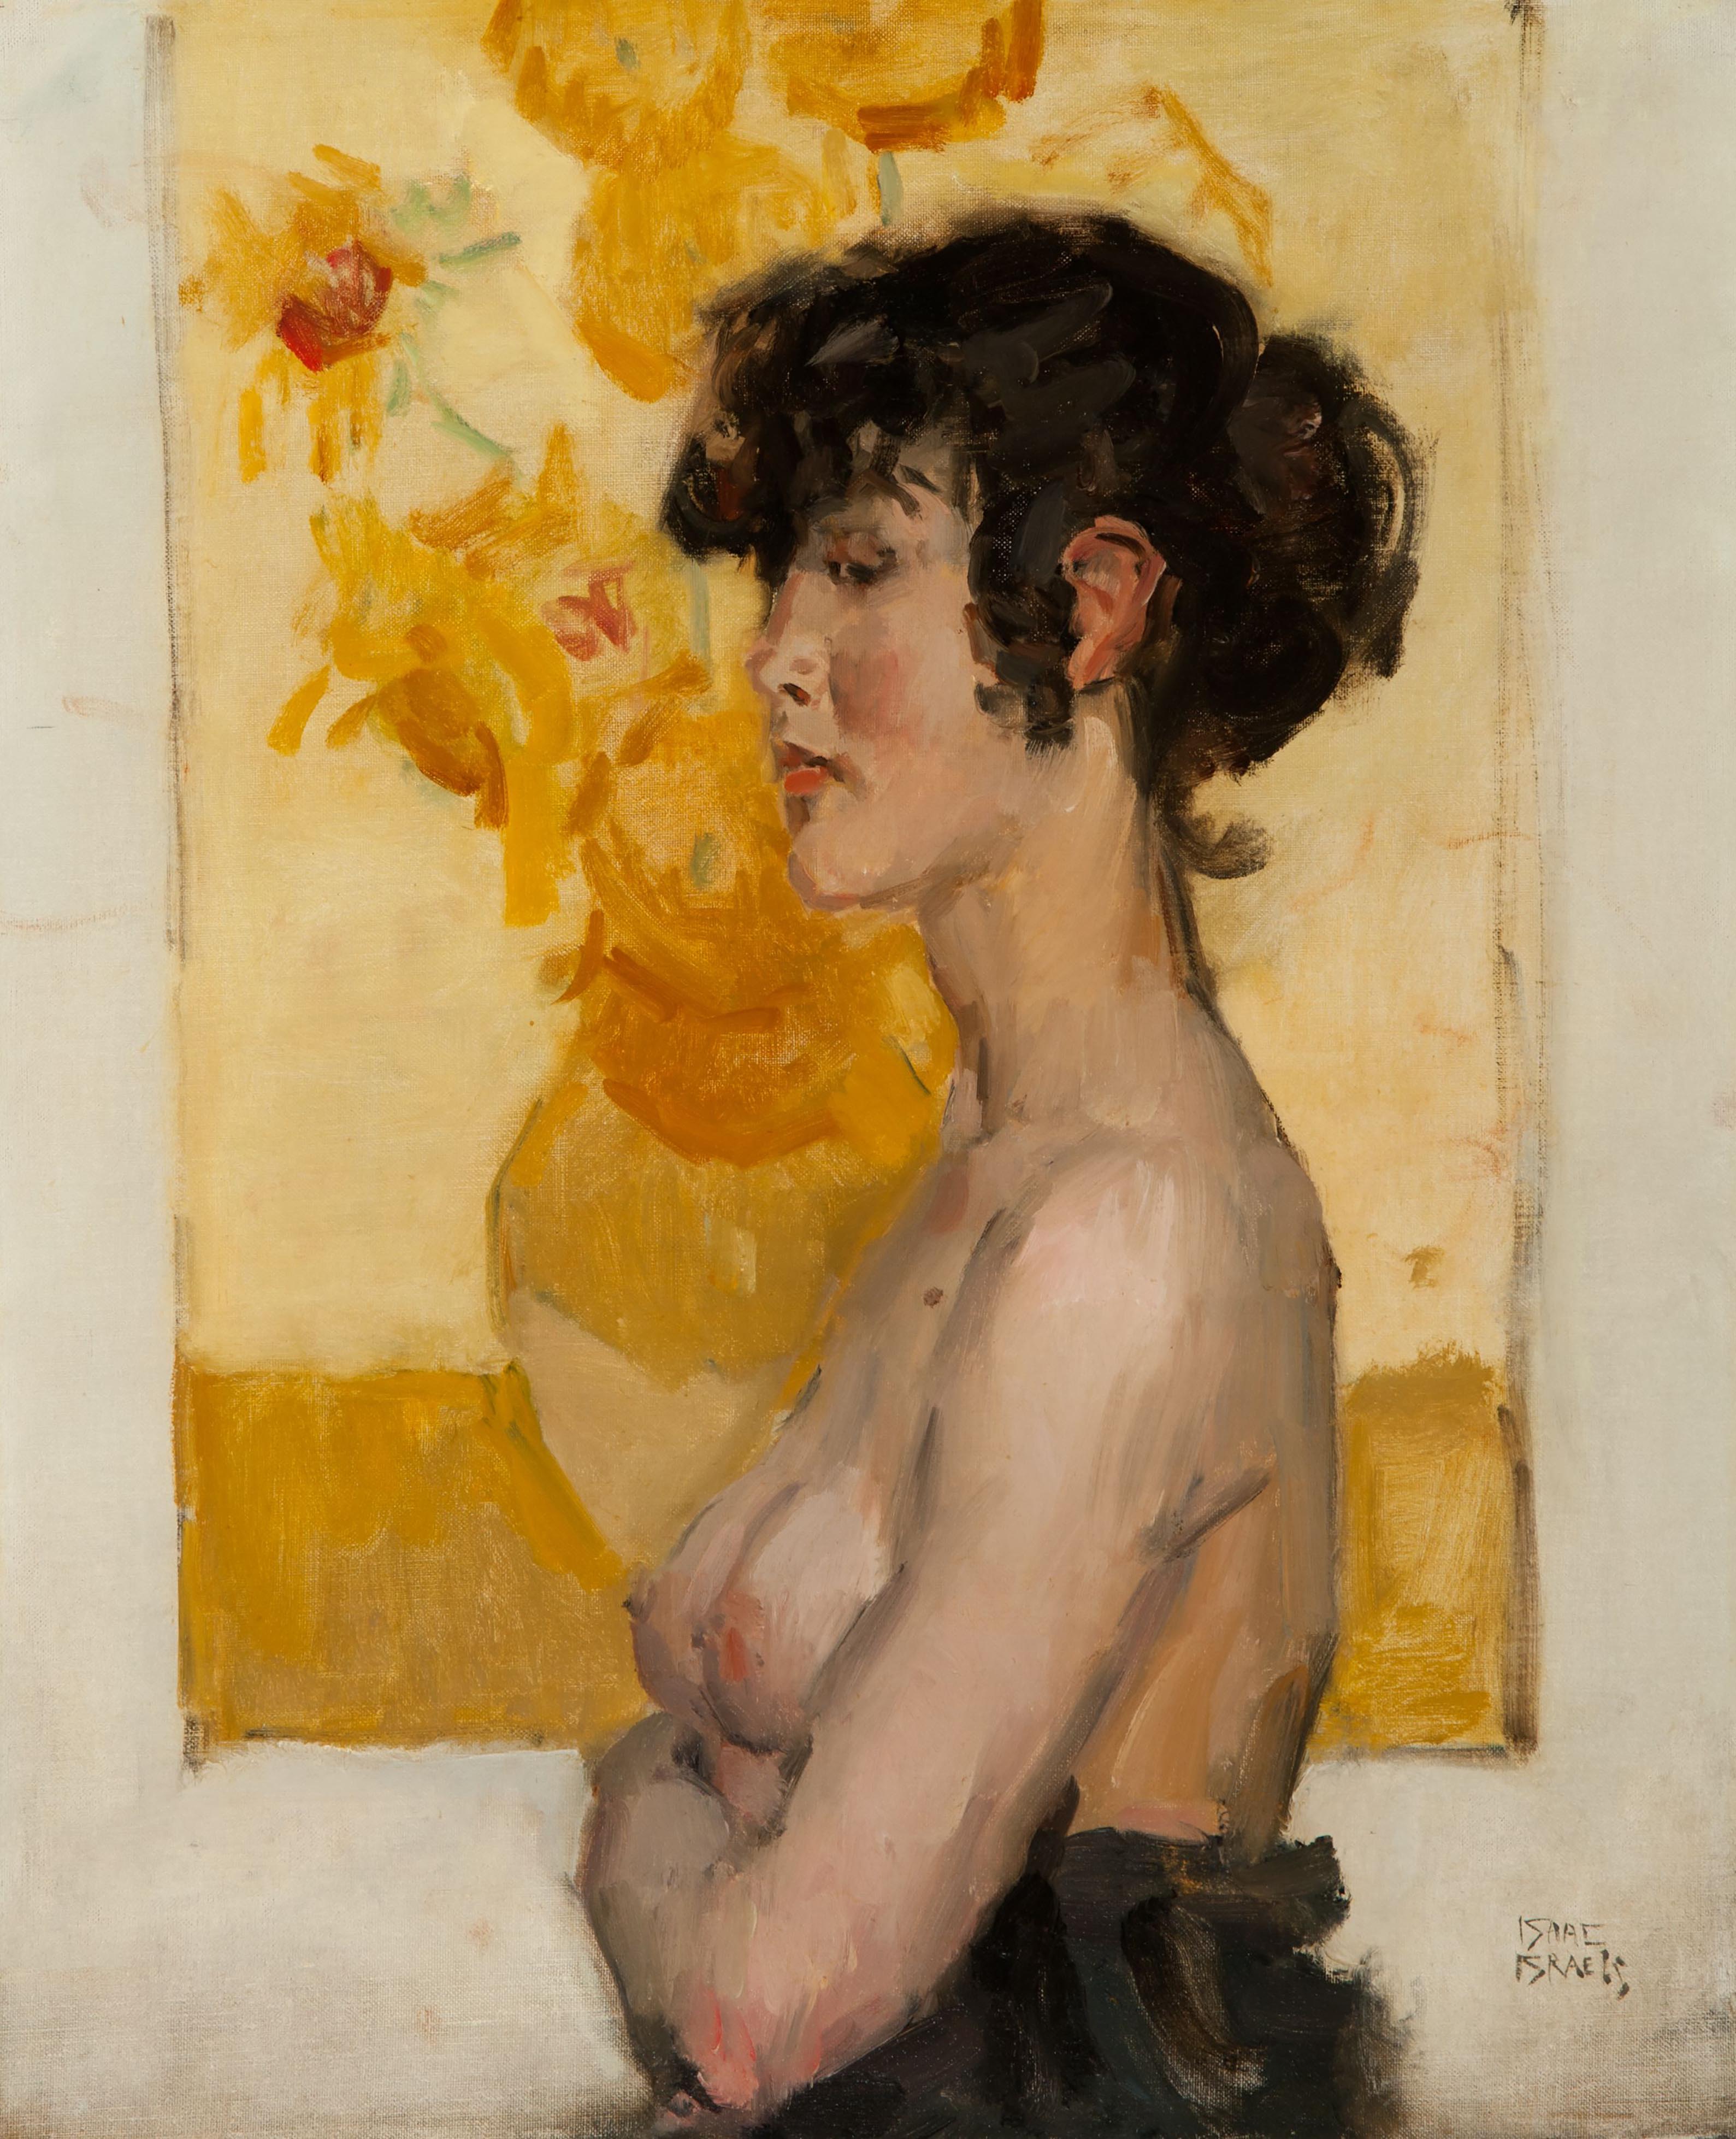 반고흐의 해바라기 그림 앞에 있는 여인의 옆모습 by Isaac Israels - 1916-1920 - 71 x 59 cm 